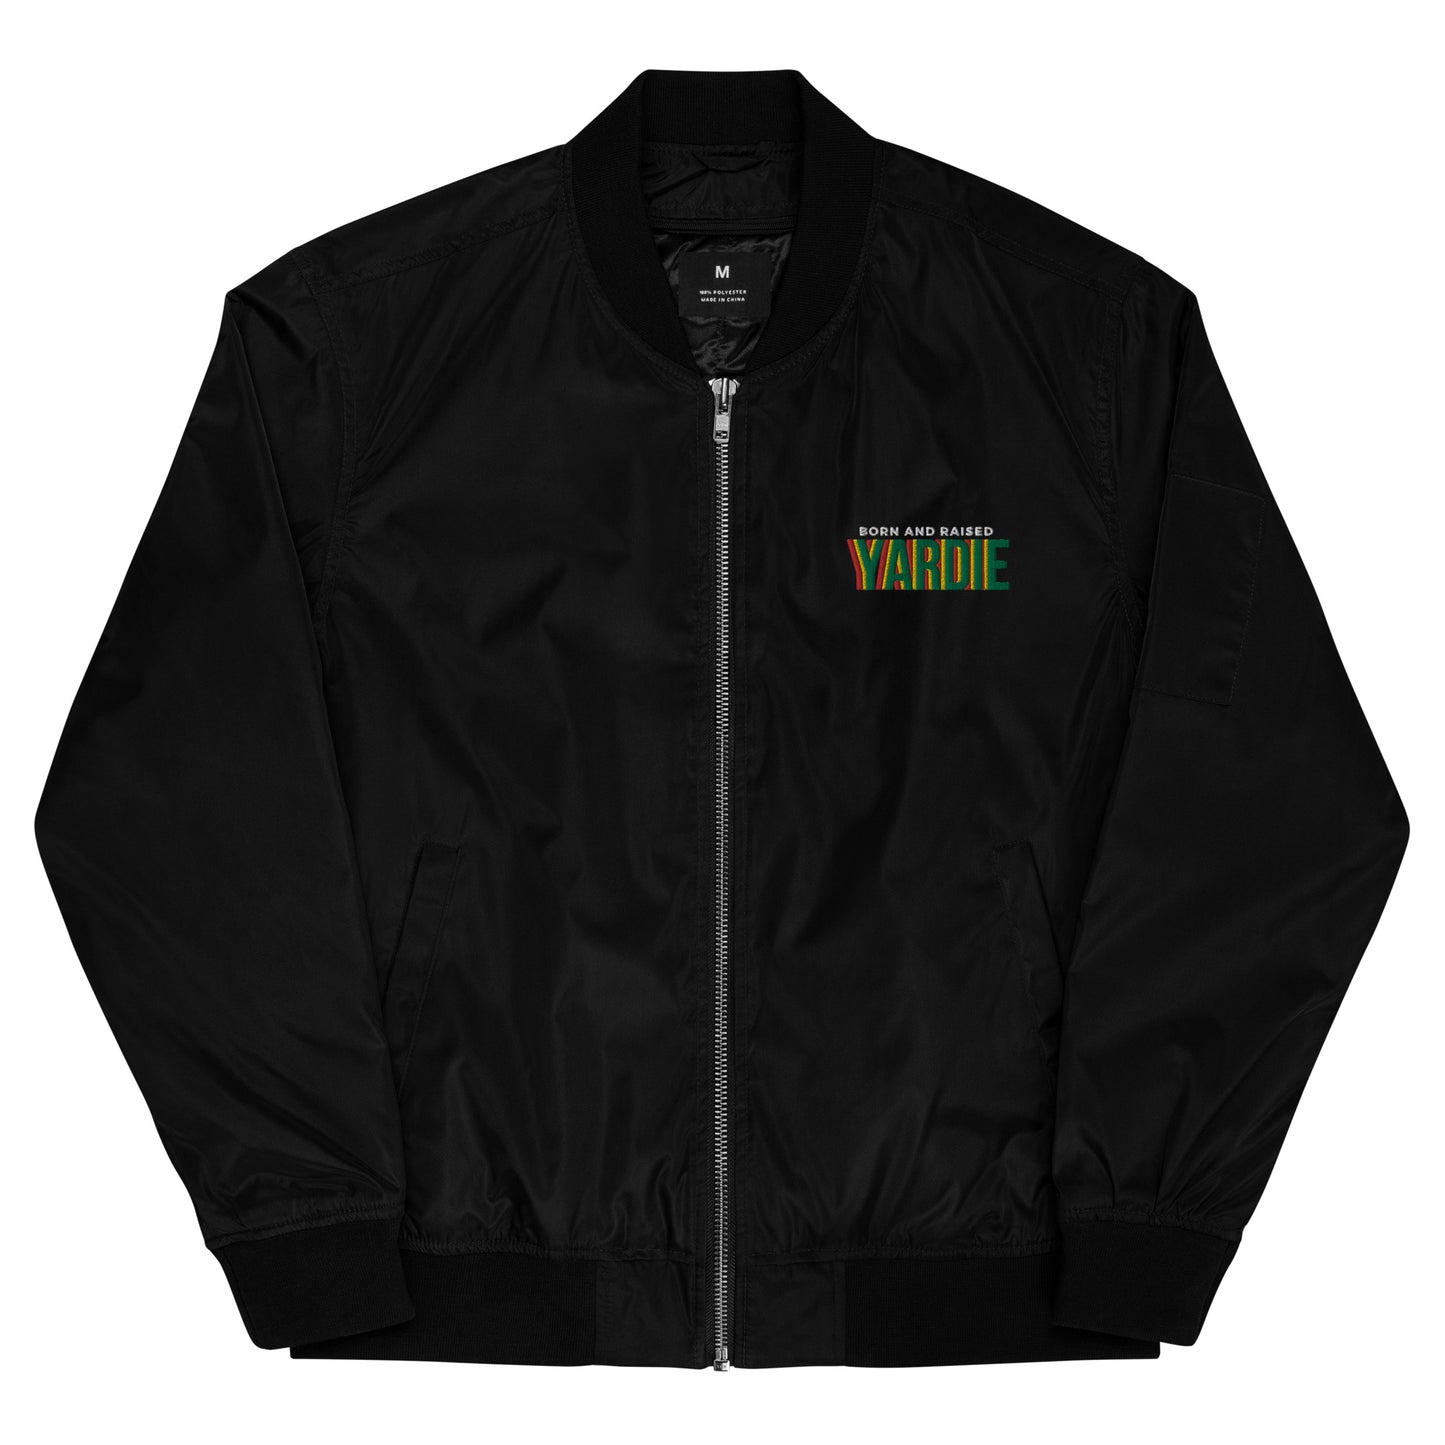 Yardie - Premium recycled bomber jacket